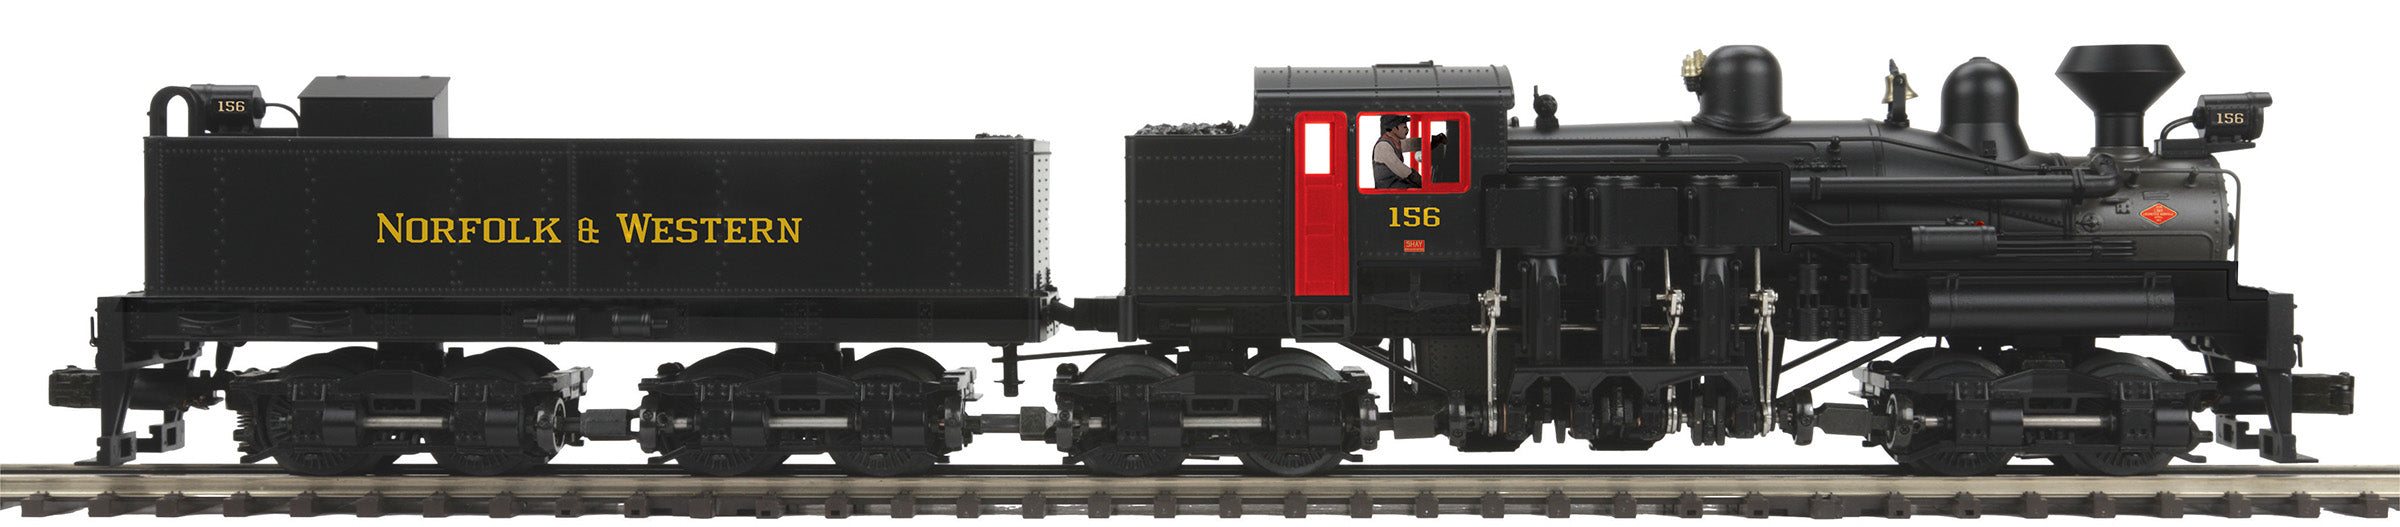 MTH 20-3881-1 - 4-Truck Shay Steam Engine "Norfolk & Western" #156 w/ PS3